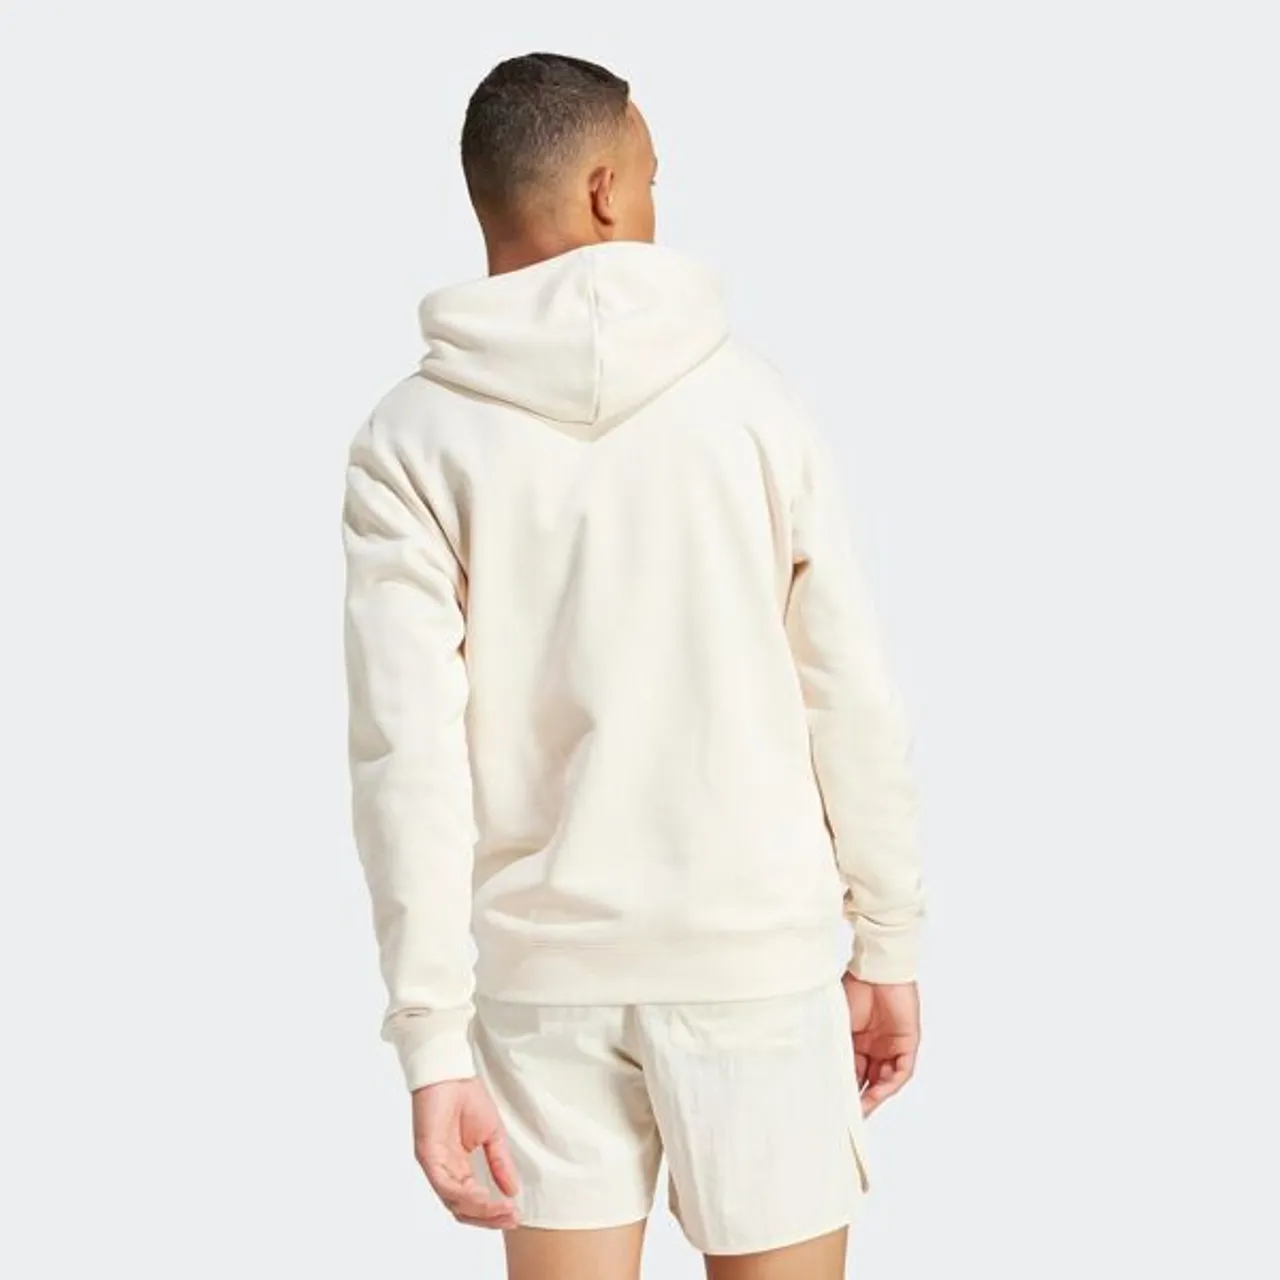 Kapuzensweatshirt ADIDAS ORIGINALS "TREFOIL HOODY" Gr. S, weiß (wonder white) Herren Sweatshirts